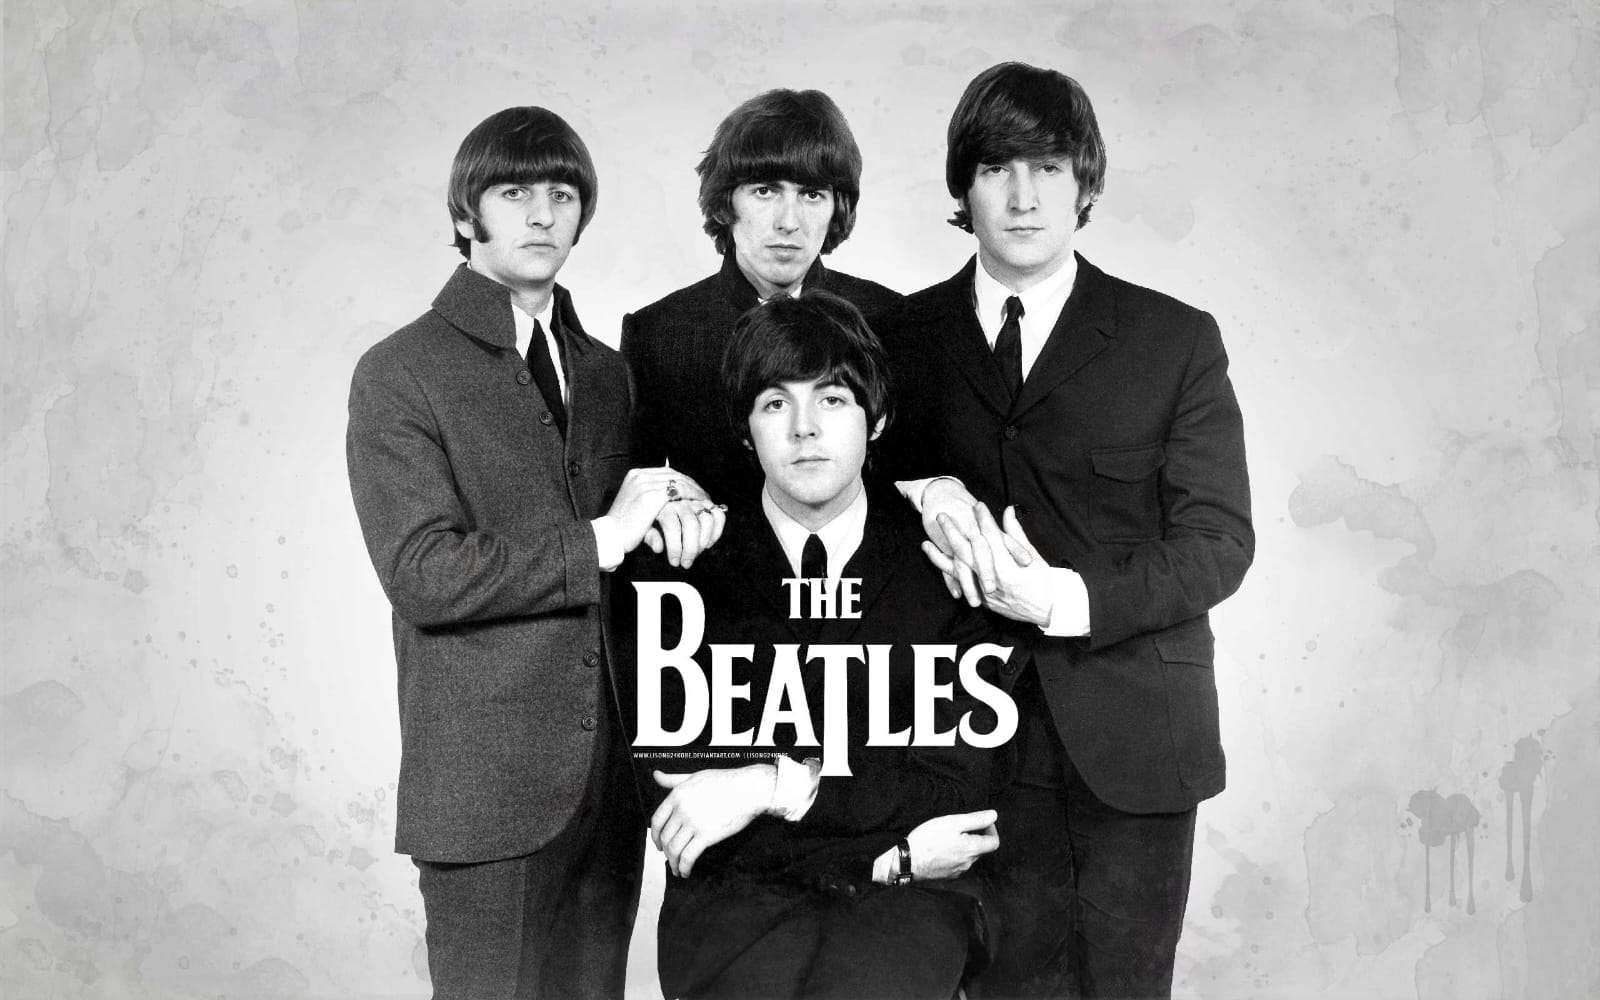  The Beatles sang Legenda yang Menggetarkan Dunia Musik dengan Sejarah Kontroversialnya